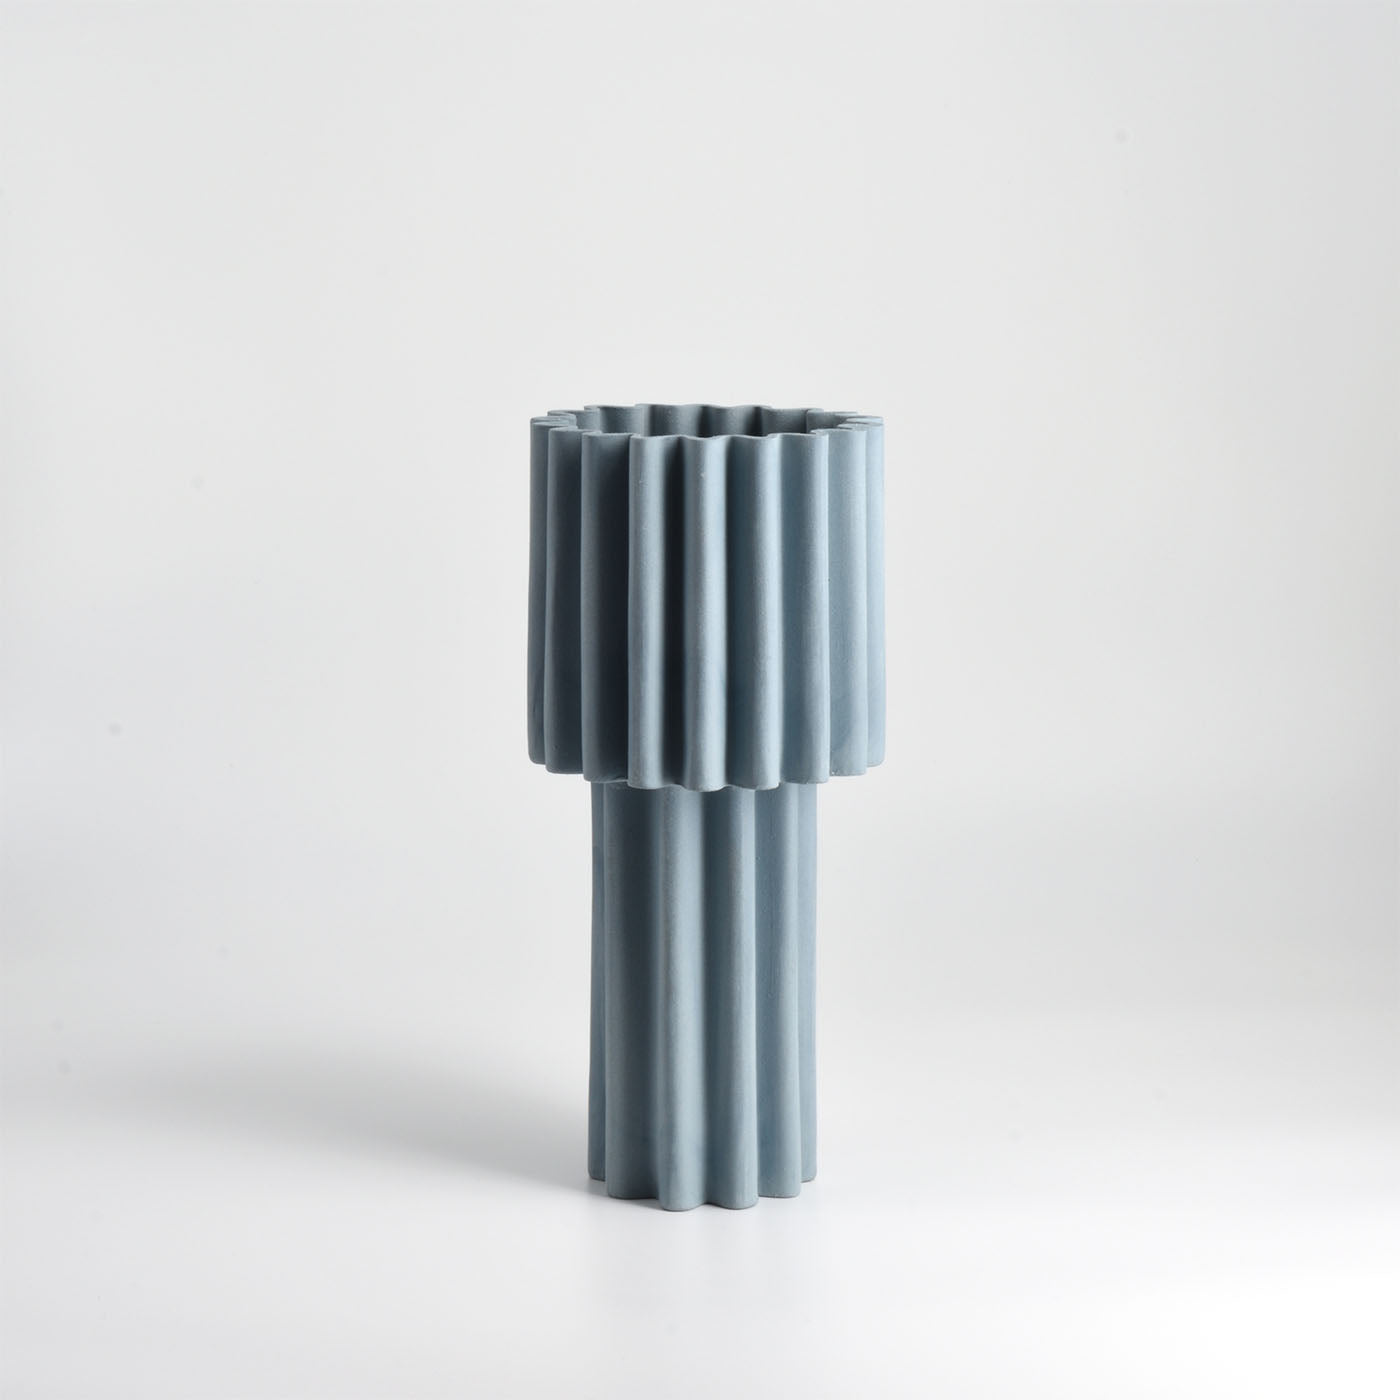 Le Torri Albero Slim Cerulean-Blue Vase - Alternative view 1